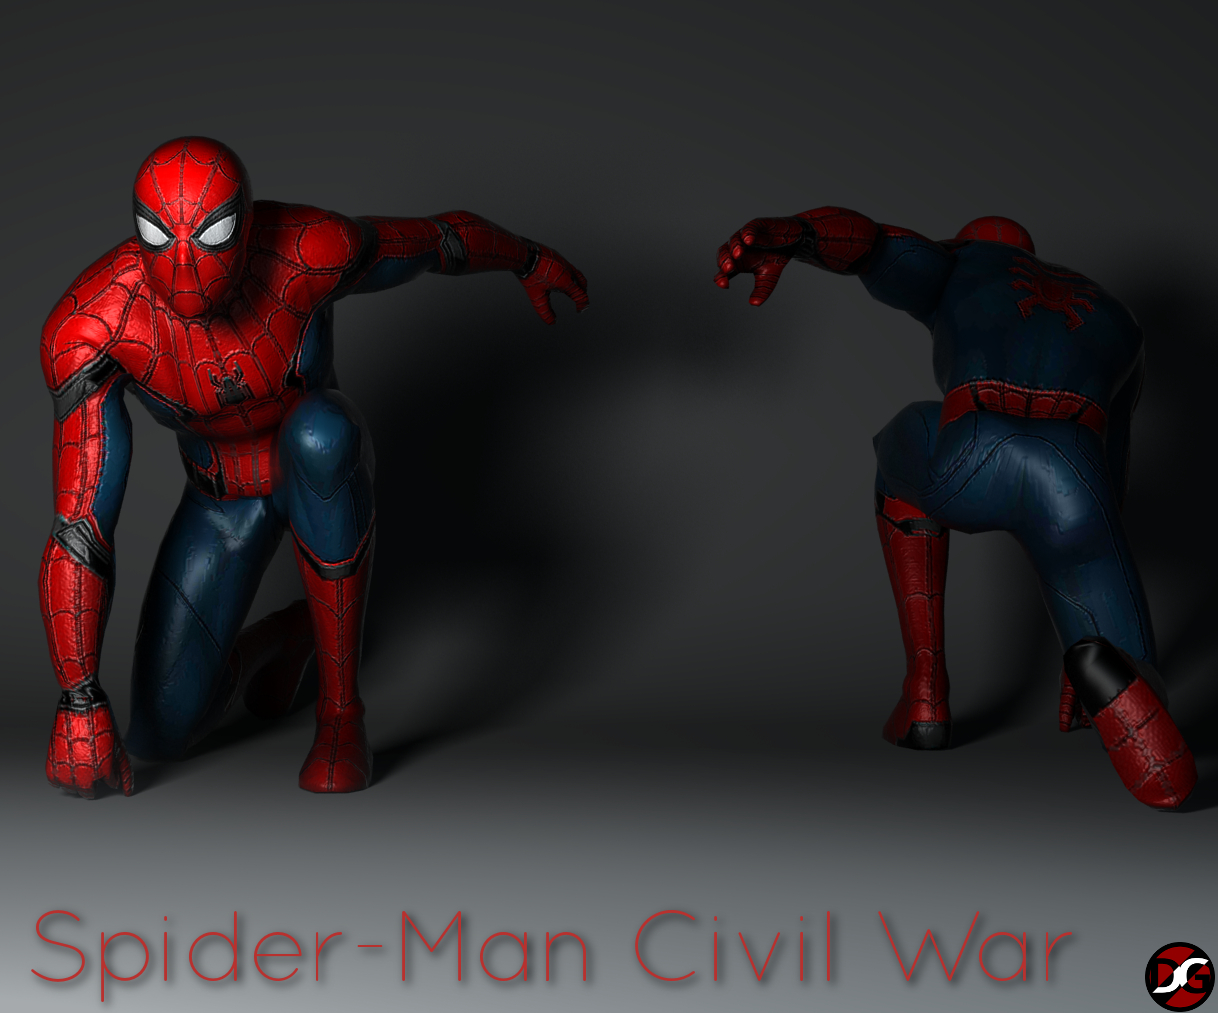 Spider-Man Civil War gta 0